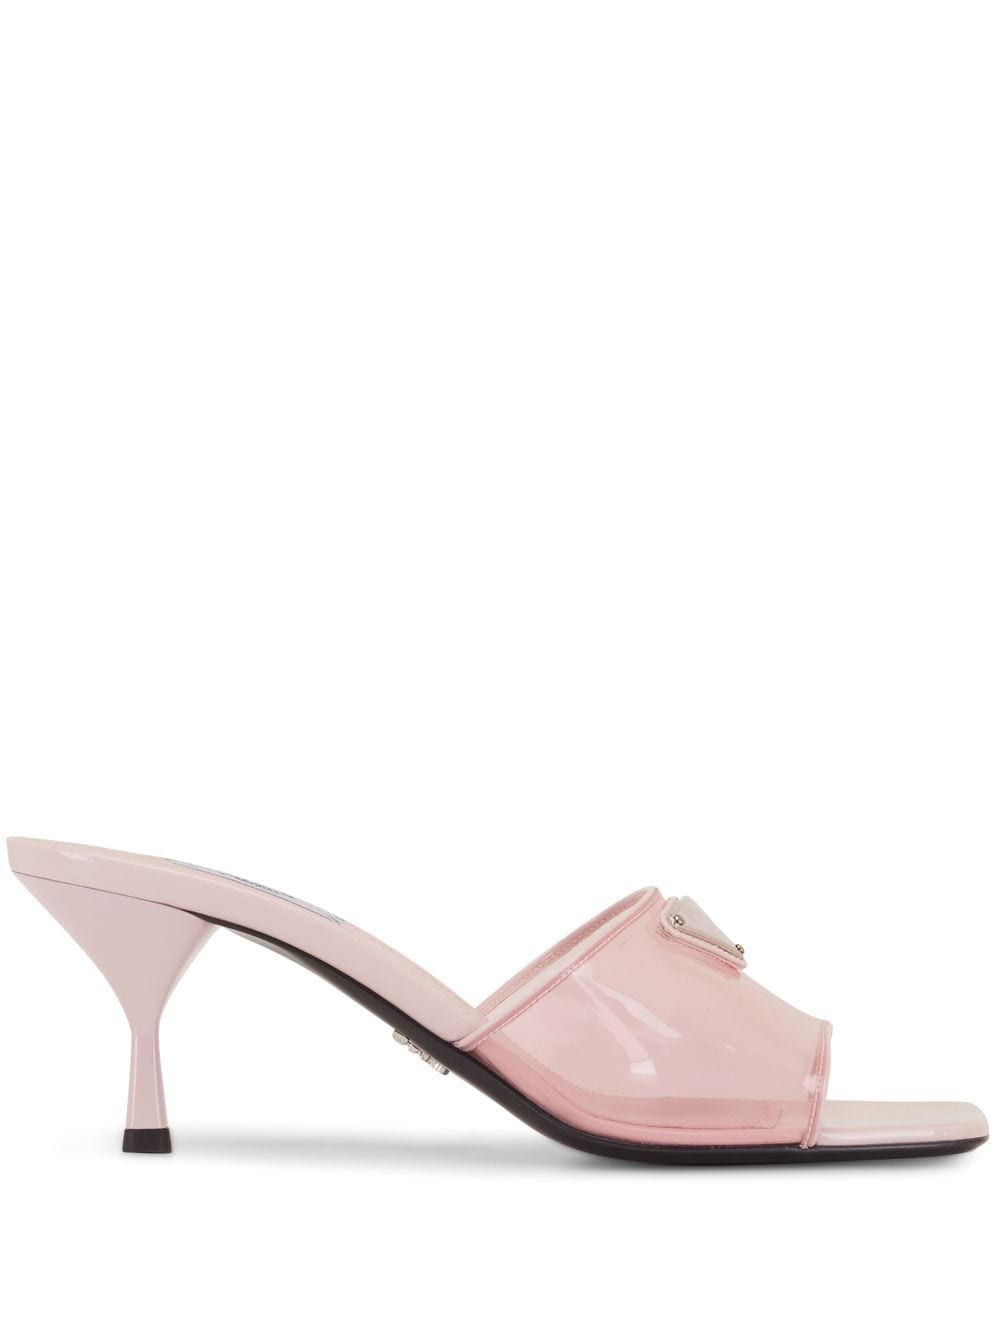 Prada logo-embellished sandals - Pink